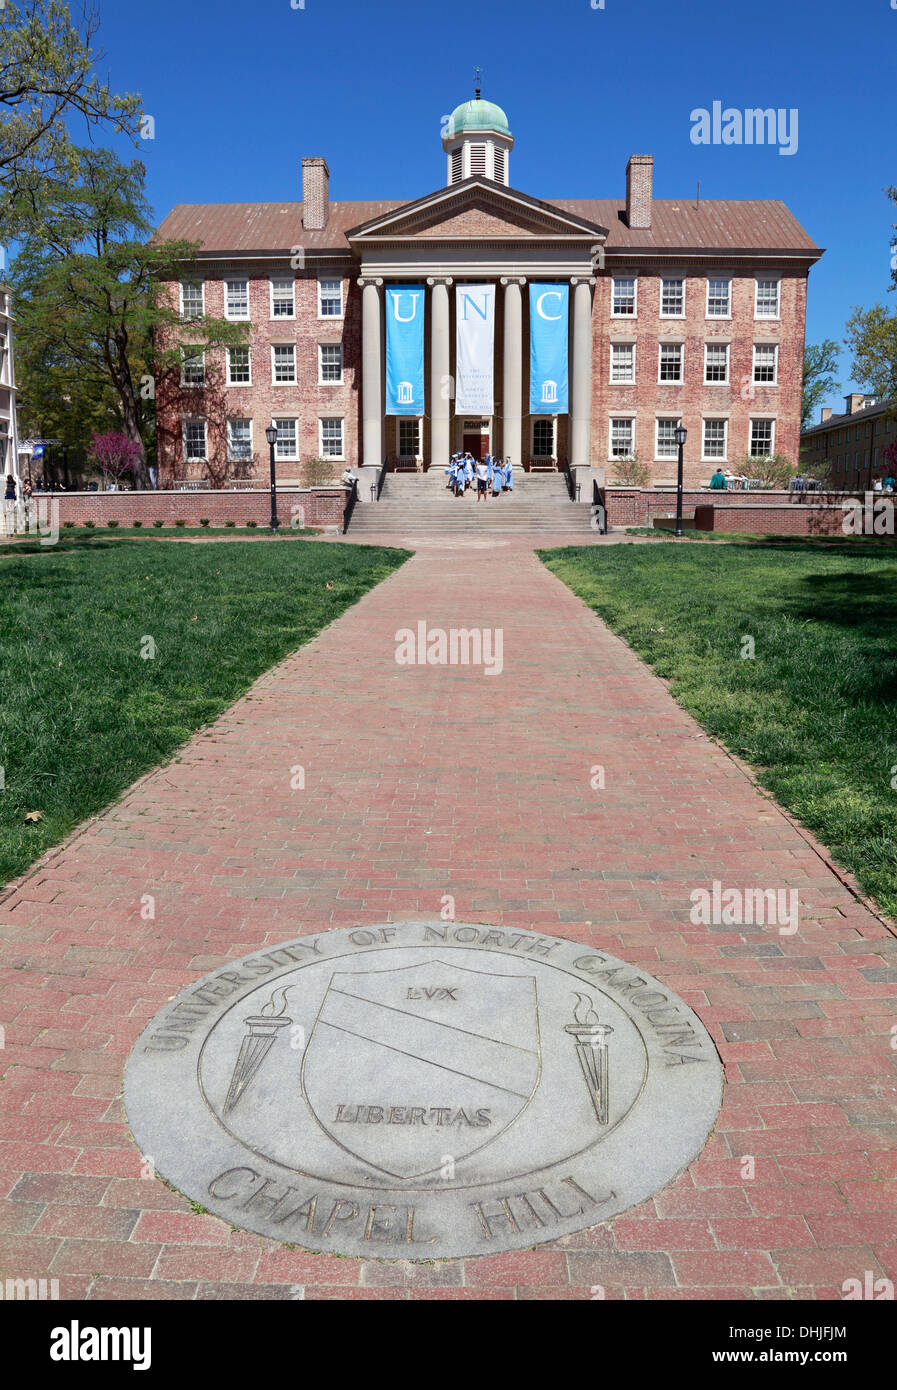 Università della North Carolina a Chapel Hill, UNC, campus. Edificio a sud. Foto Stock